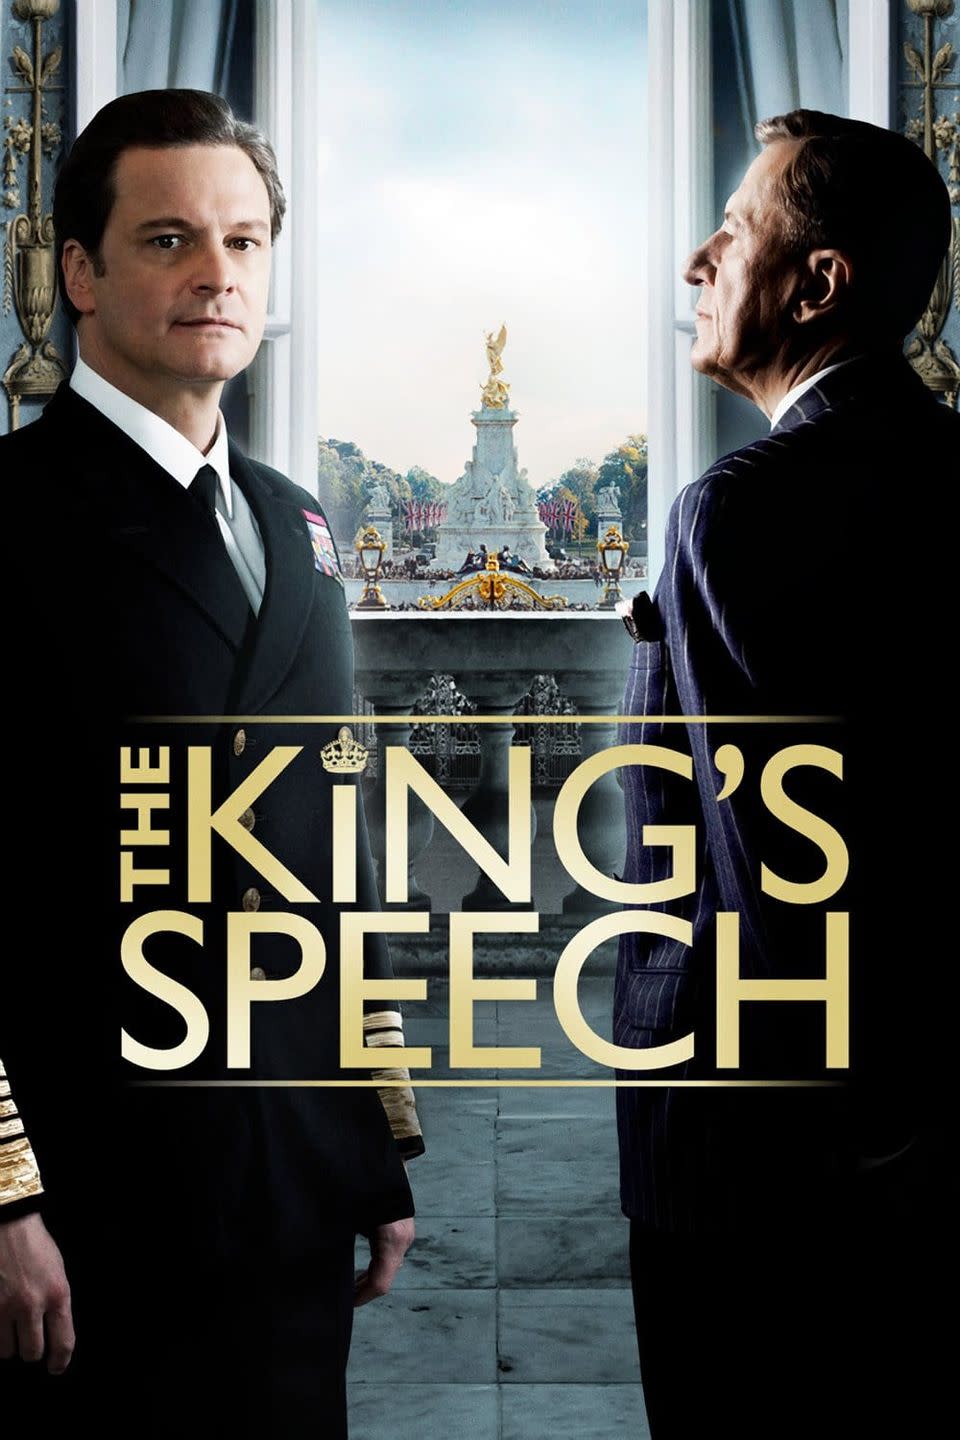 9) The King's Speech